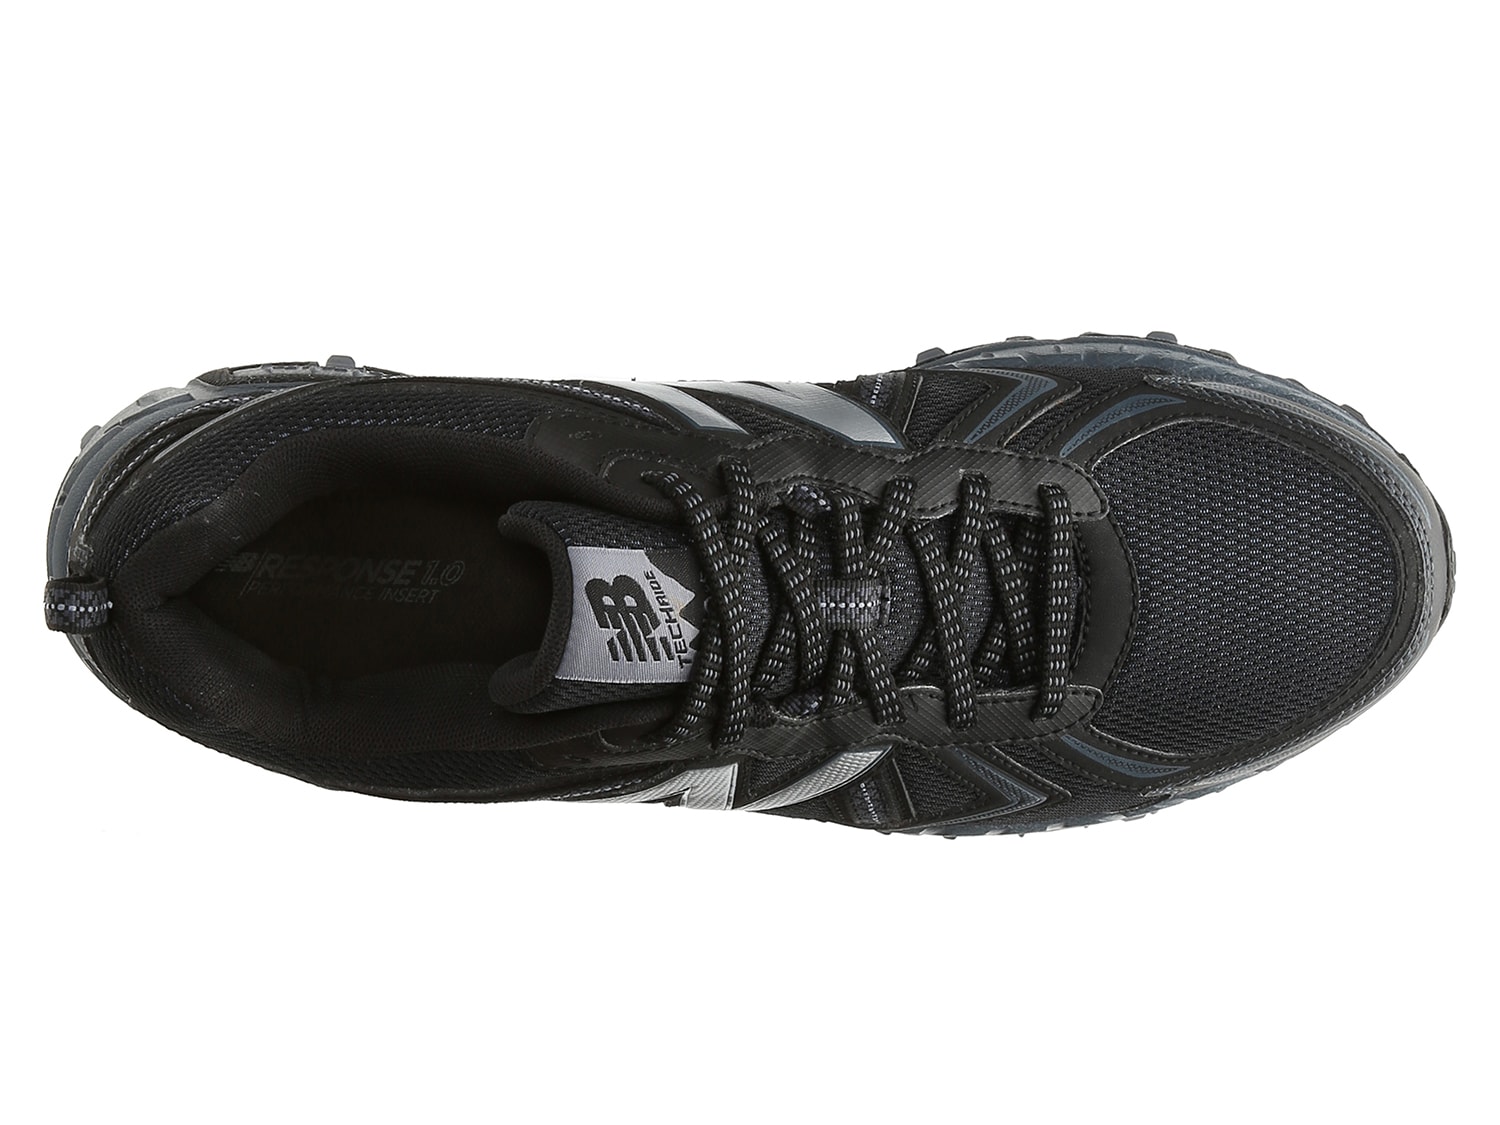 410v5 trail running shoe